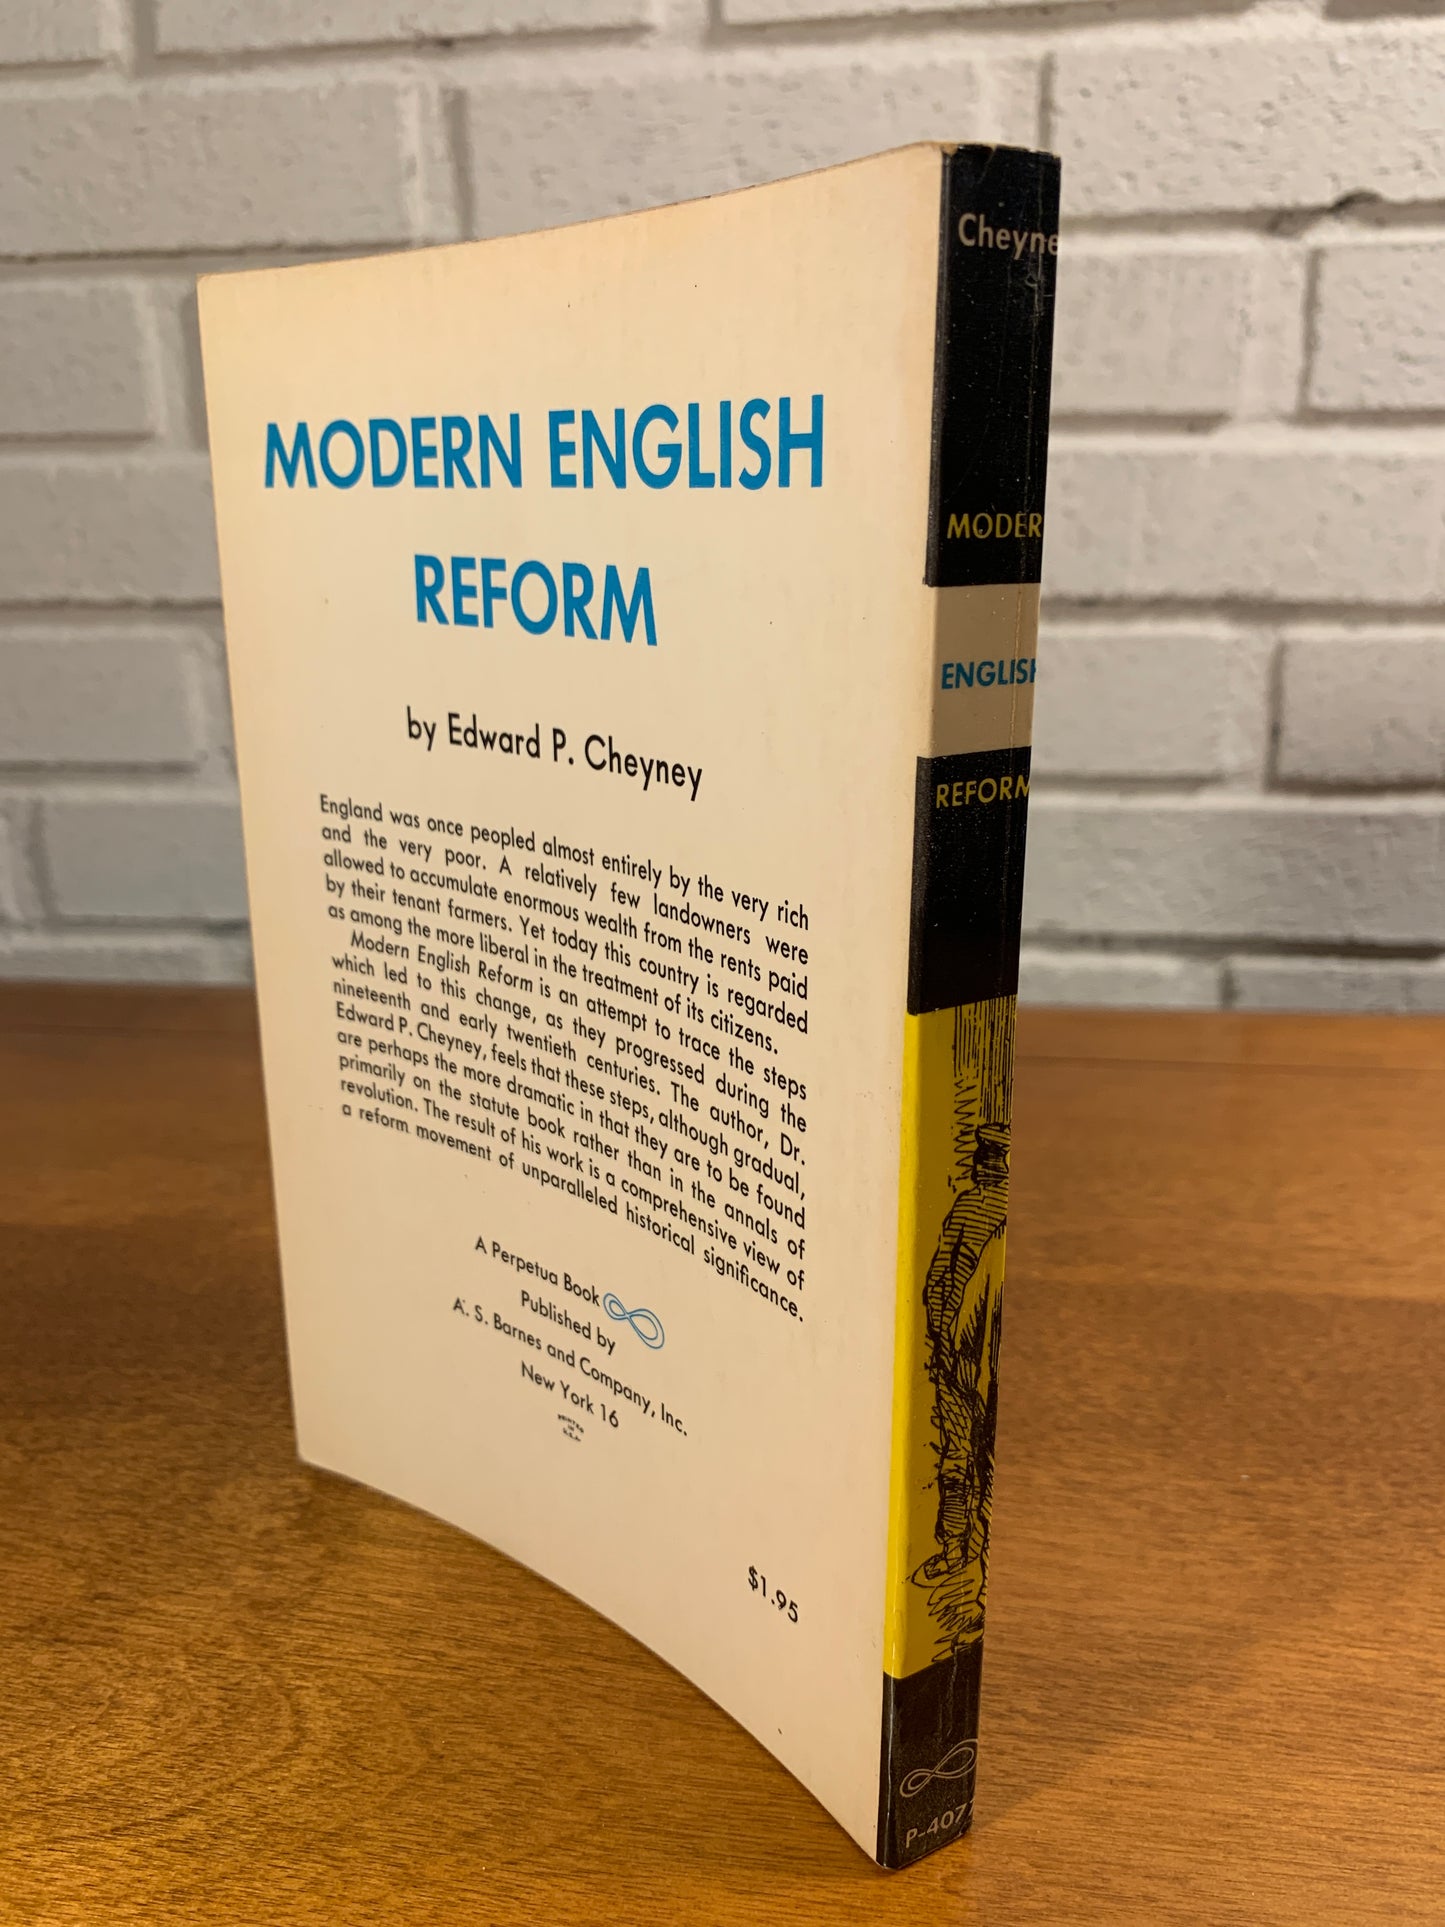 Modern English Reform by Edward P. Cheyney, 1962